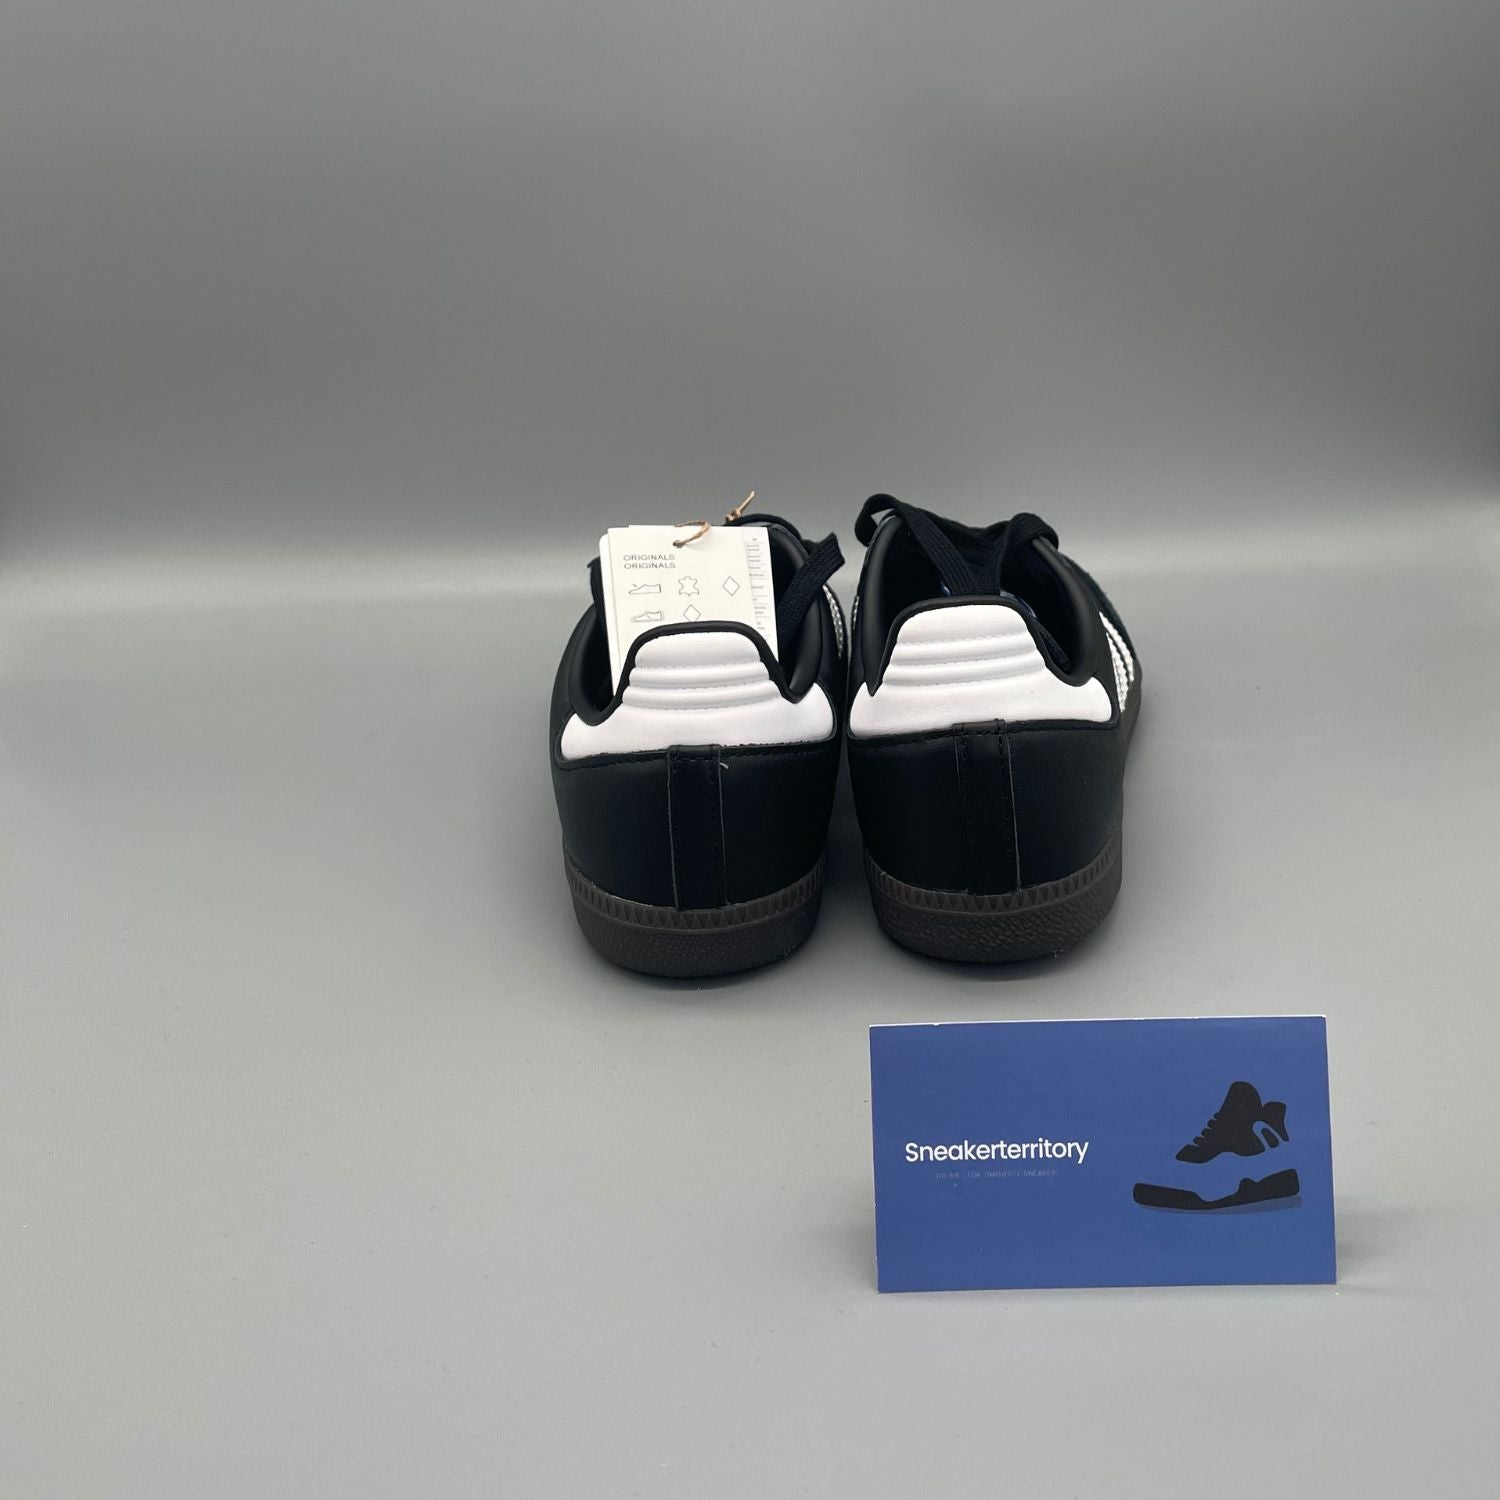 Adidas Samba OG Black White Gum - Sneakerterritory; Sneaker Territory